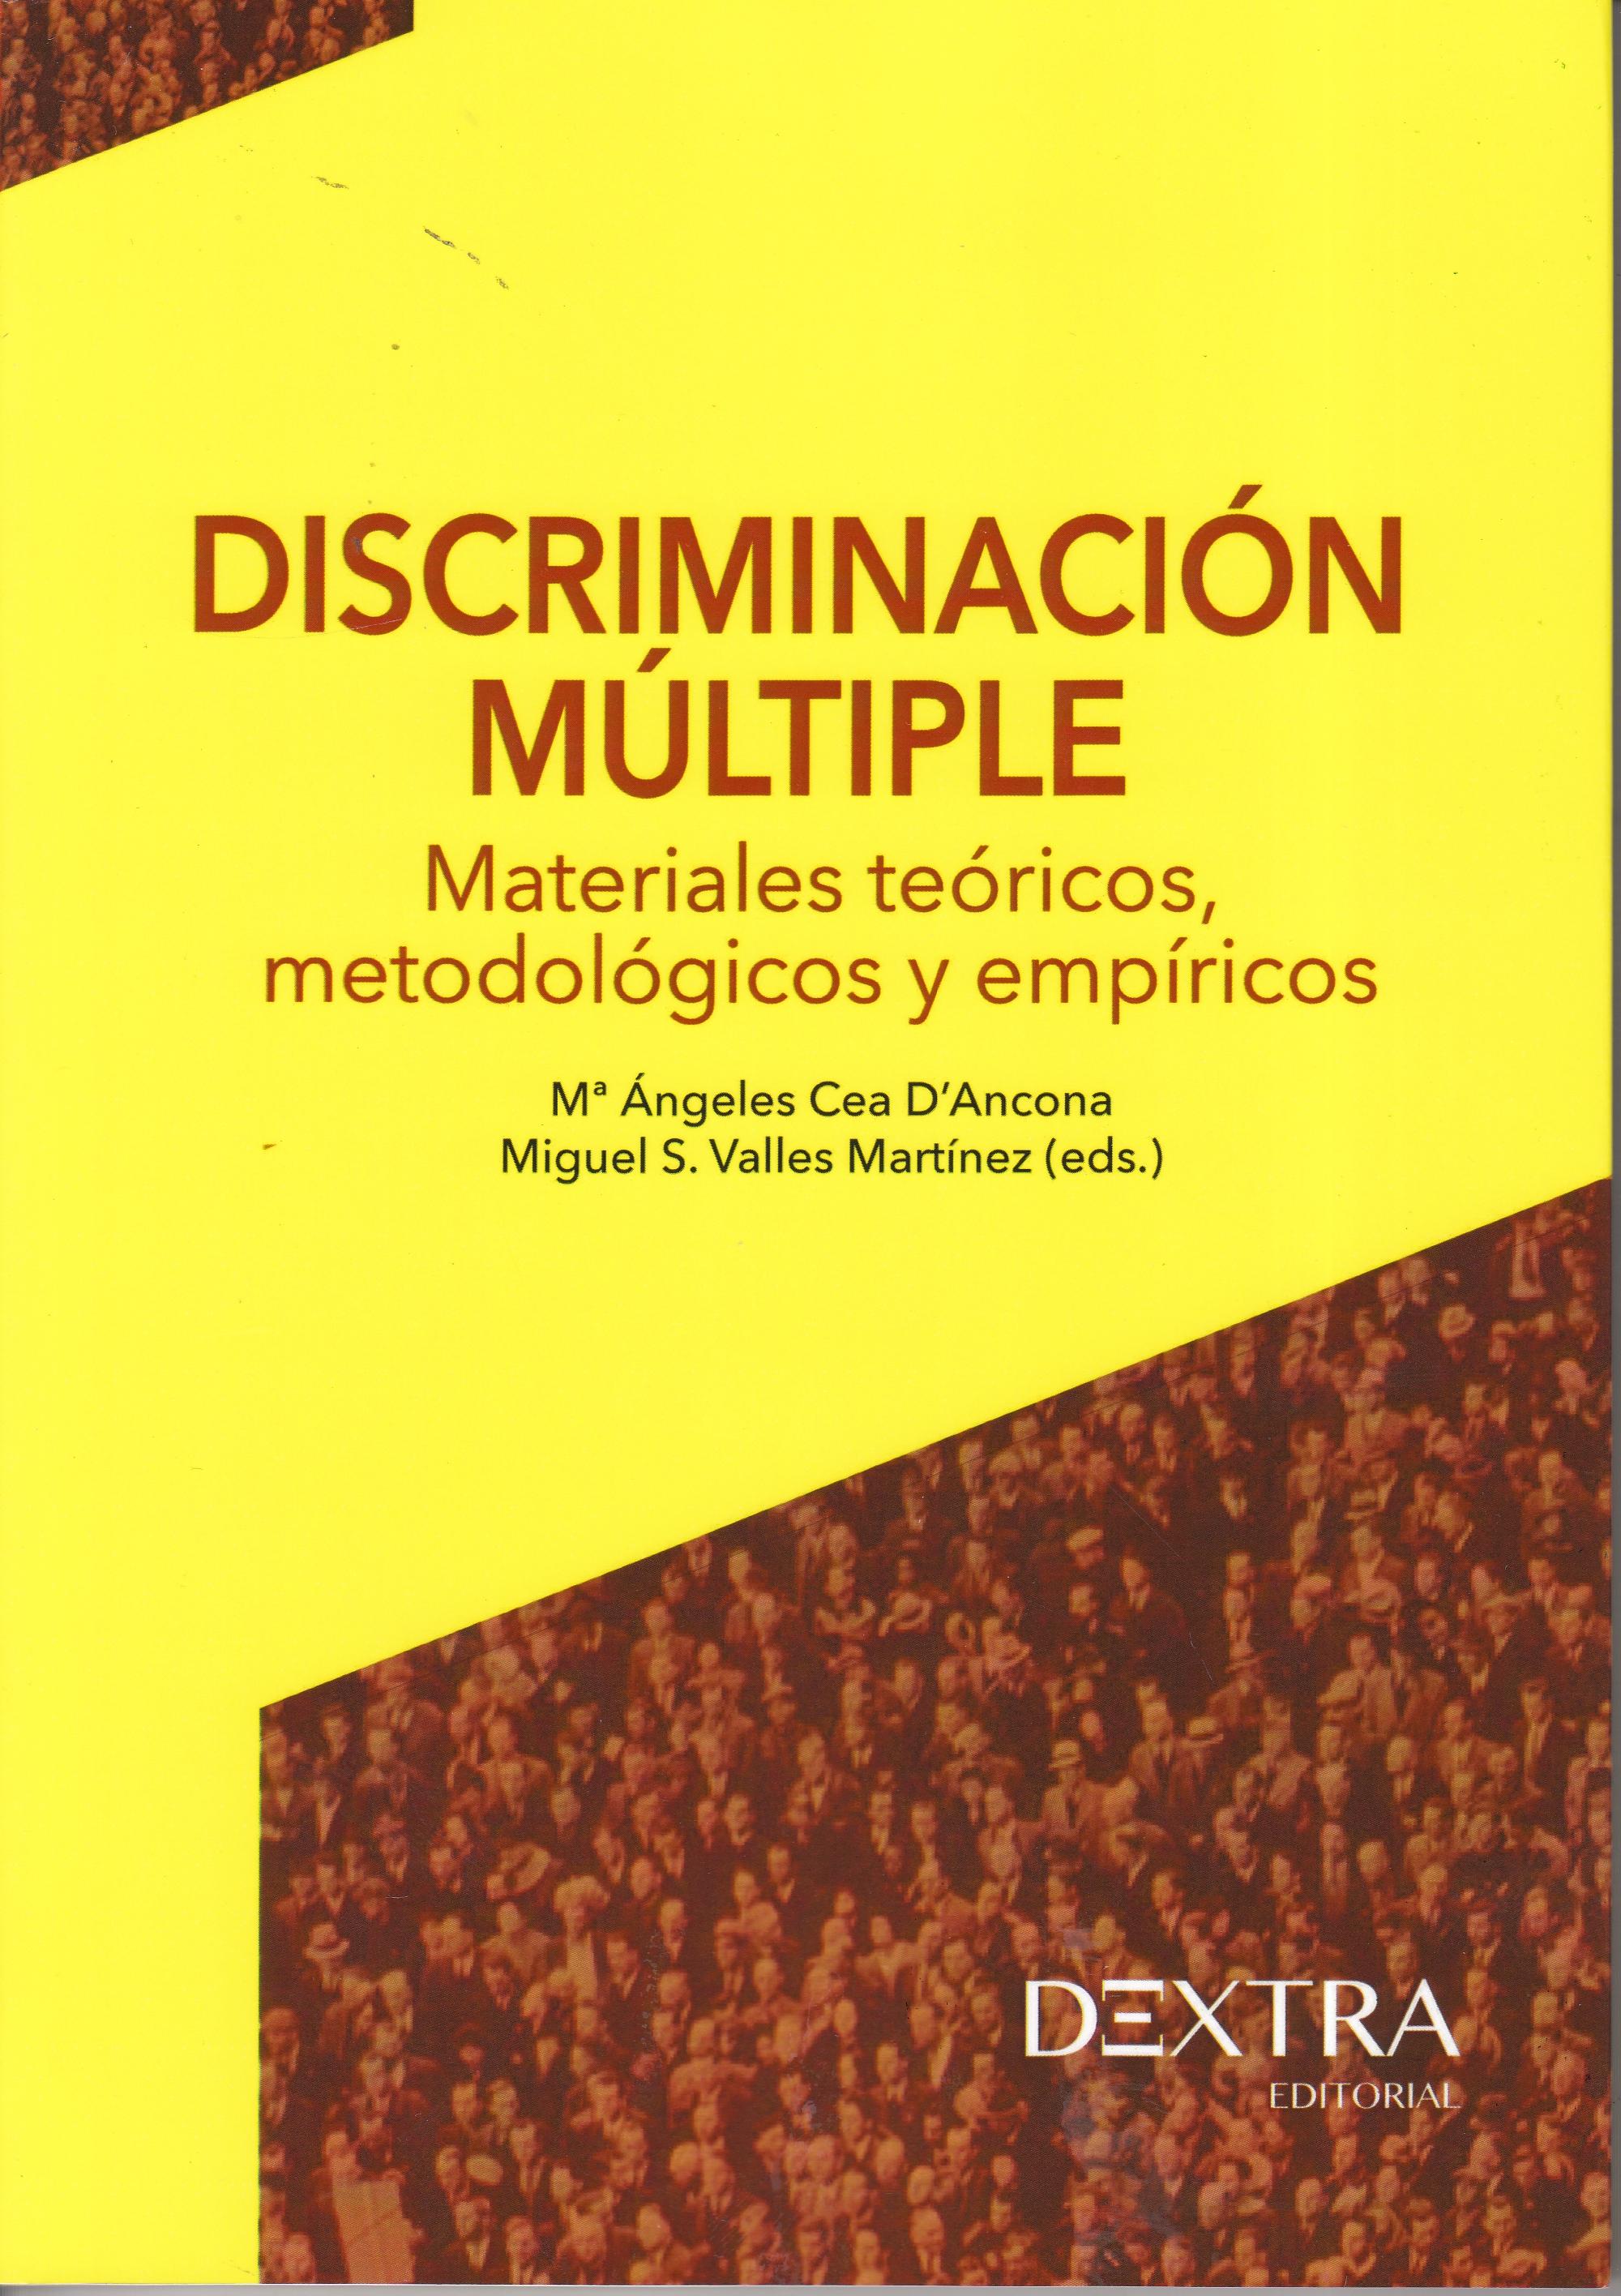 Discriminación múltiple "Materiales teóricos, metodológicos y empíricos"